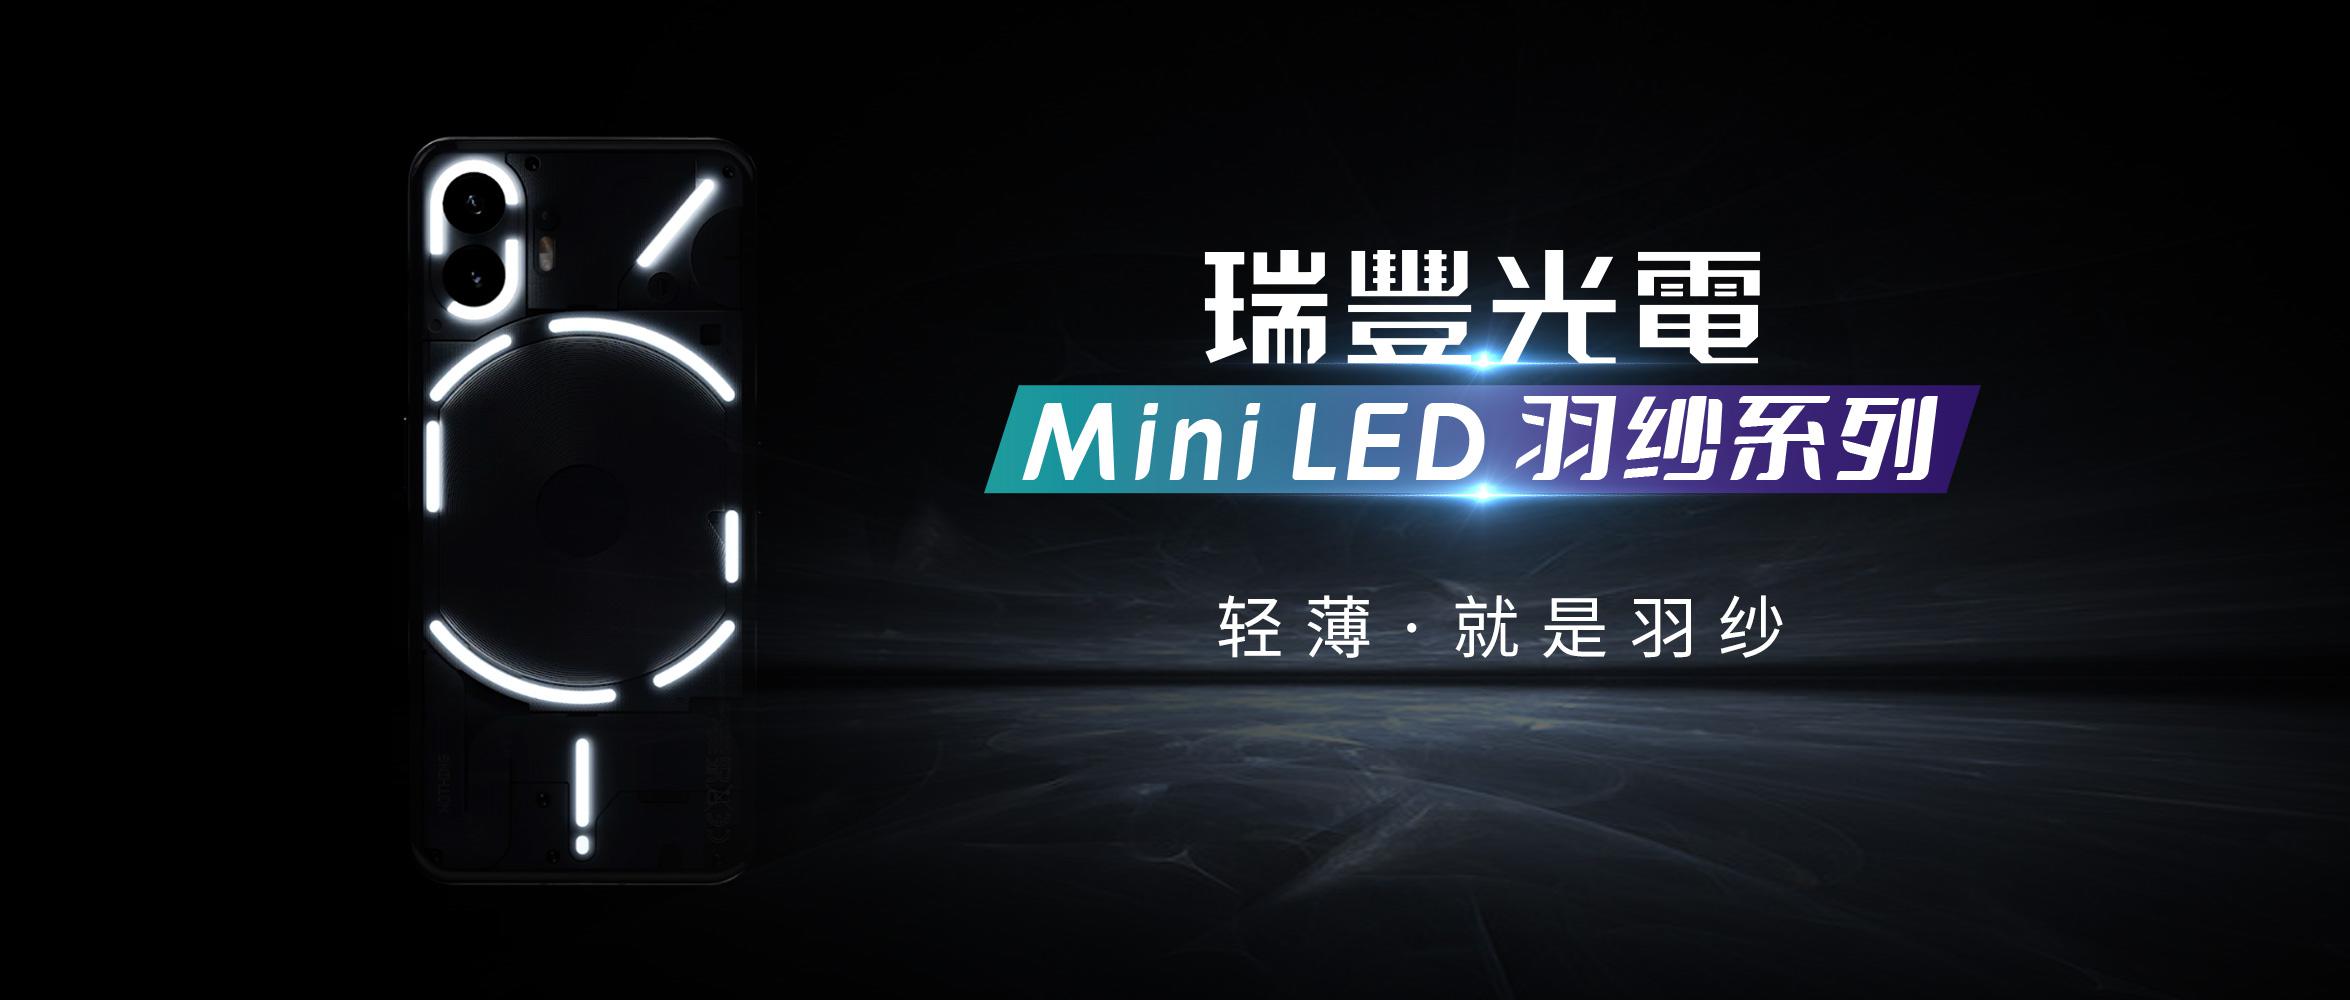 用光做设计 | Mini LED羽纱系列打开智能产品交互想象